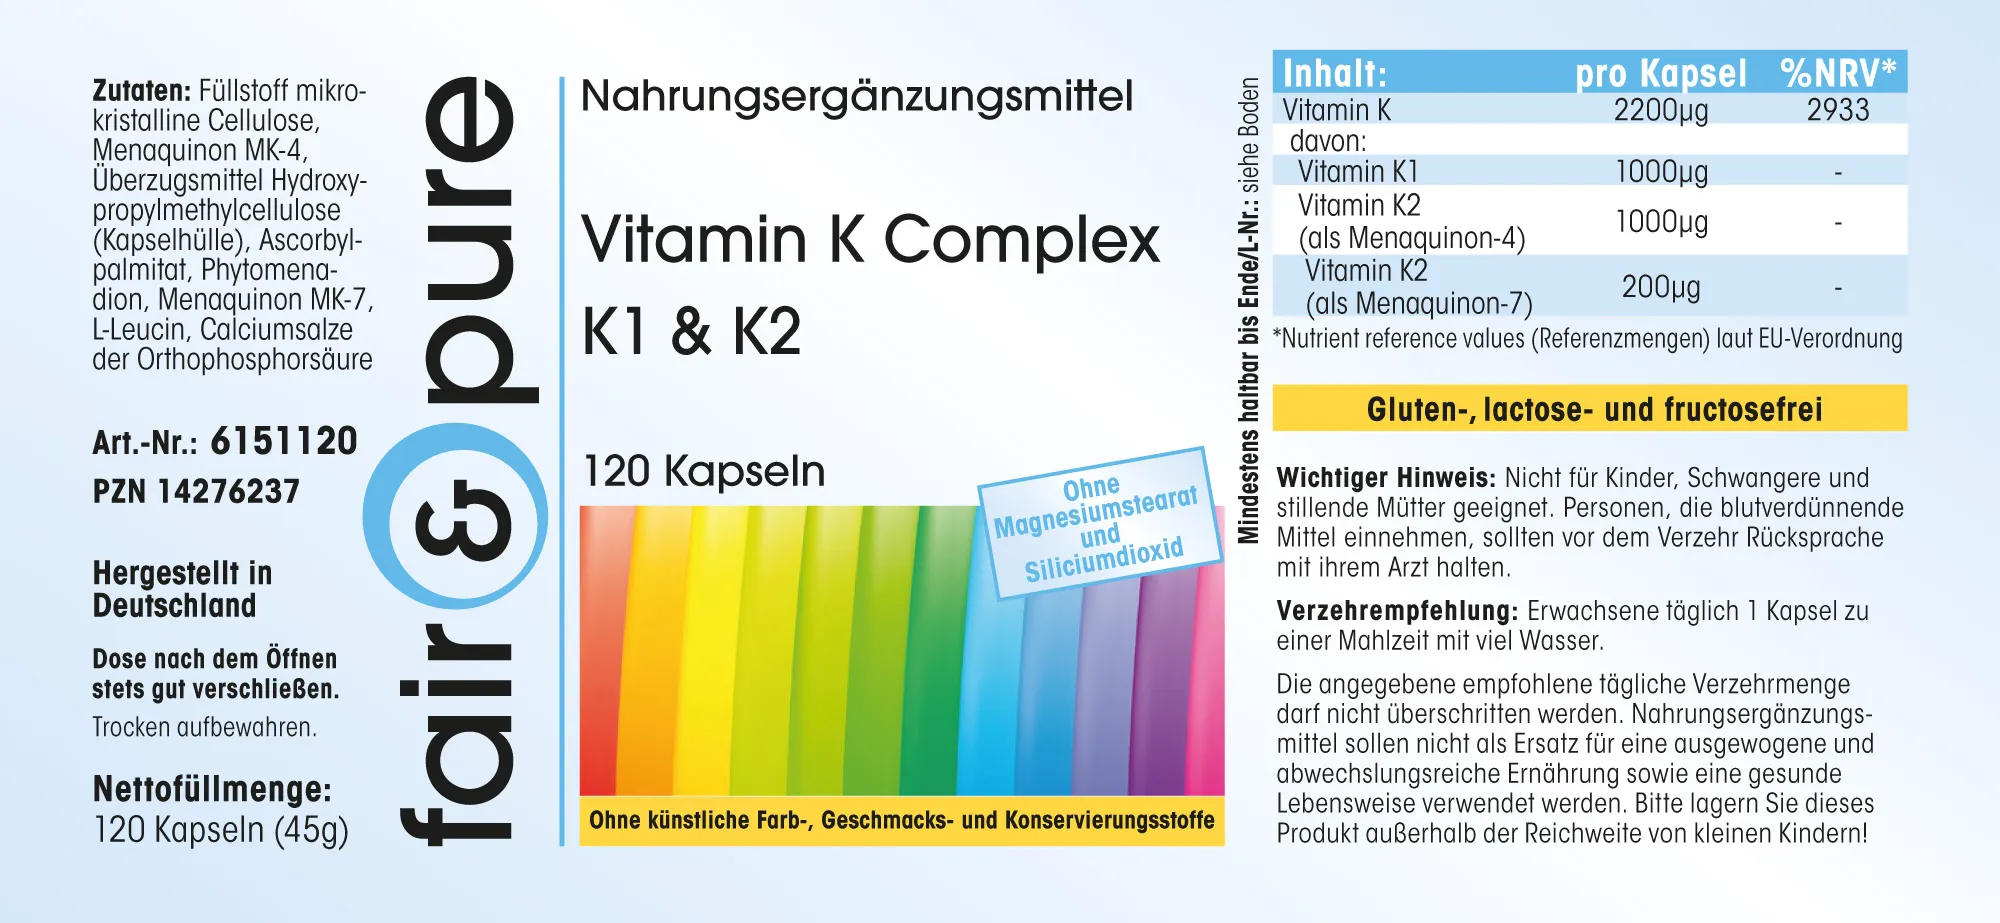 Vitamin K Complex